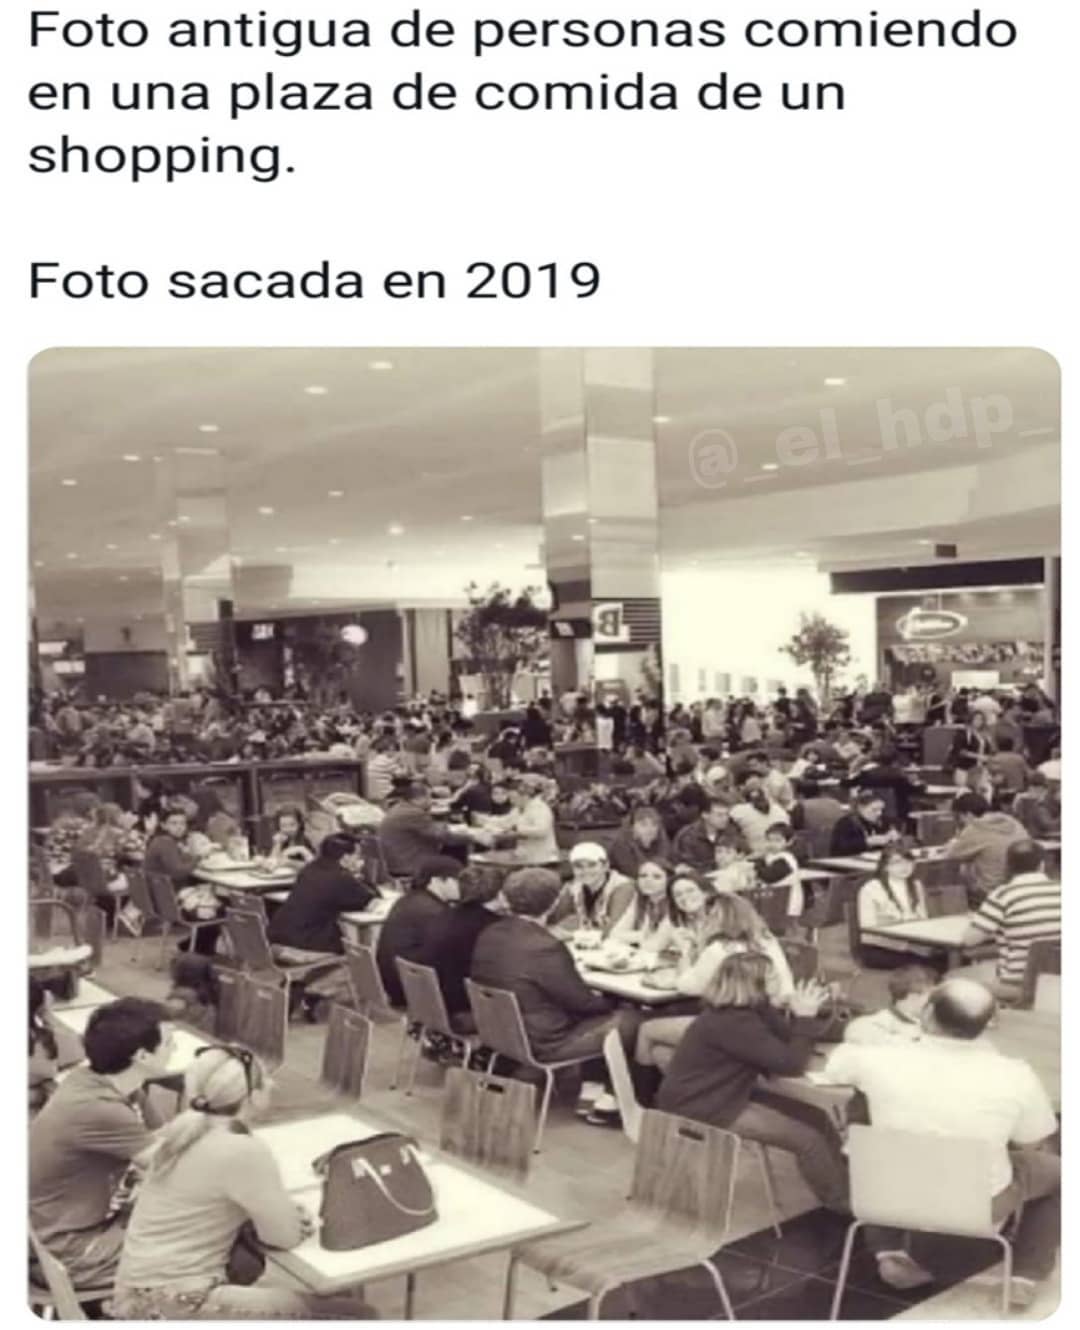 Foto antigua de personas comiendo en una plaza de comida de un shopping.  Foto sacada en 2019.